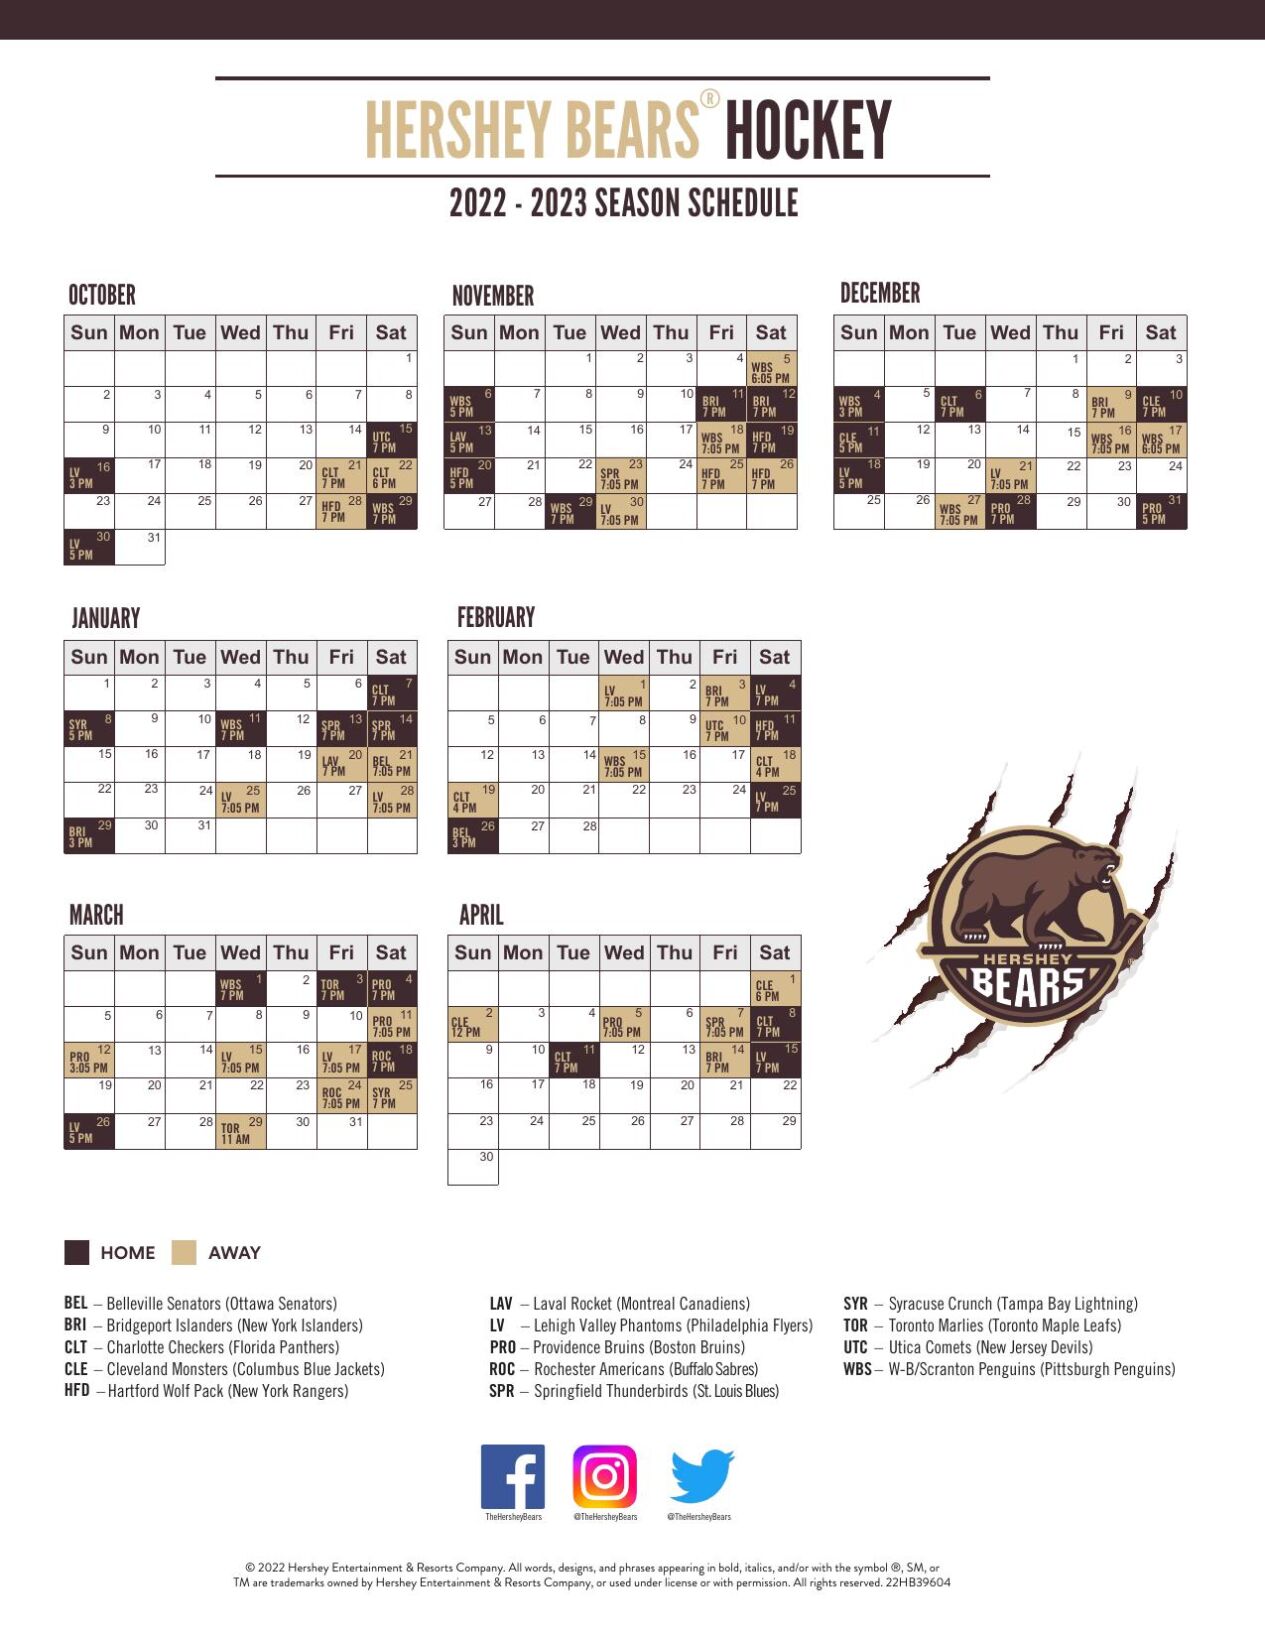 AHL Hershey Bears unveil 2022-23 regular-season schedule